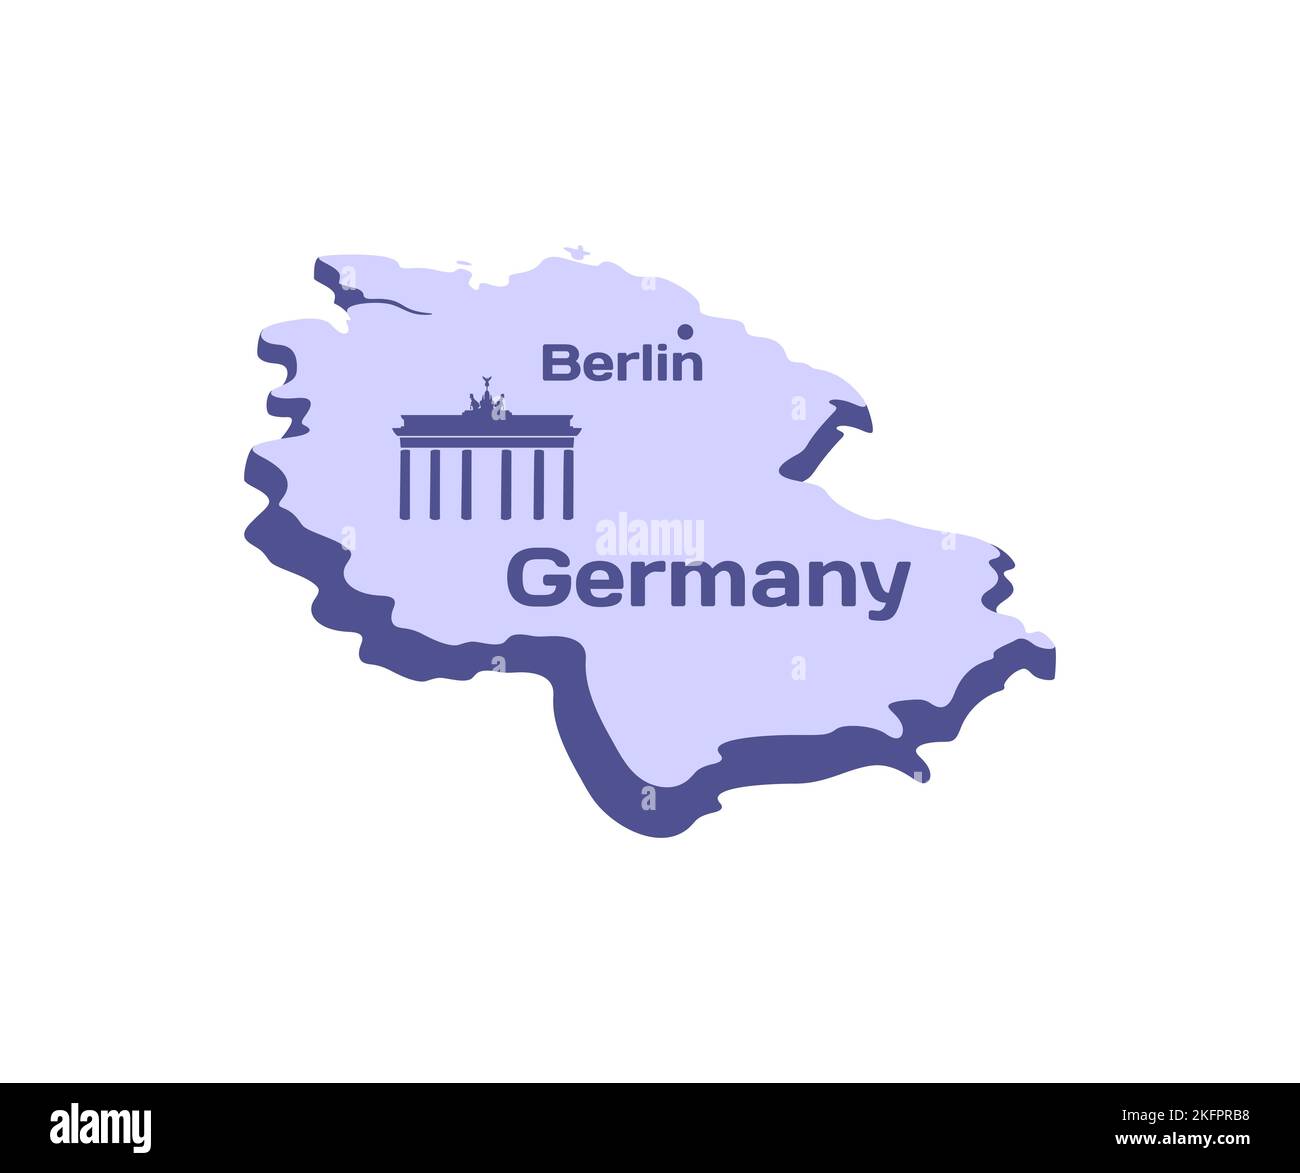 Allemagne, Berlin, porte de Brandebourg à Potsdam, carte, design graphique. Pays, attractions, voyage, site et lieu célèbre, conception de vecteur Illustration de Vecteur